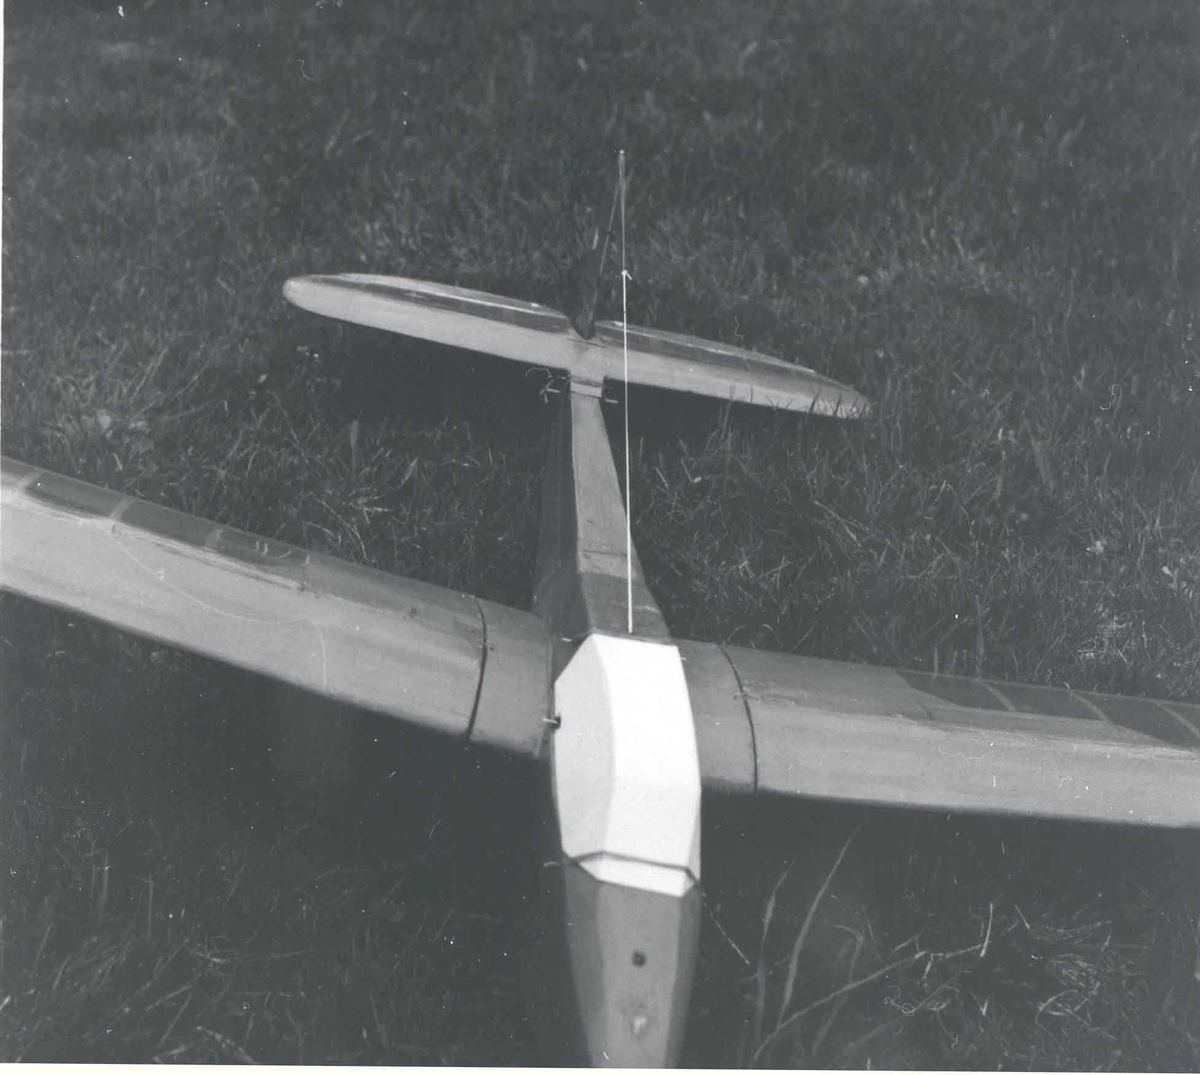 Ett modellfly - Bergfalke - med oppbygget kabin. på bakken.